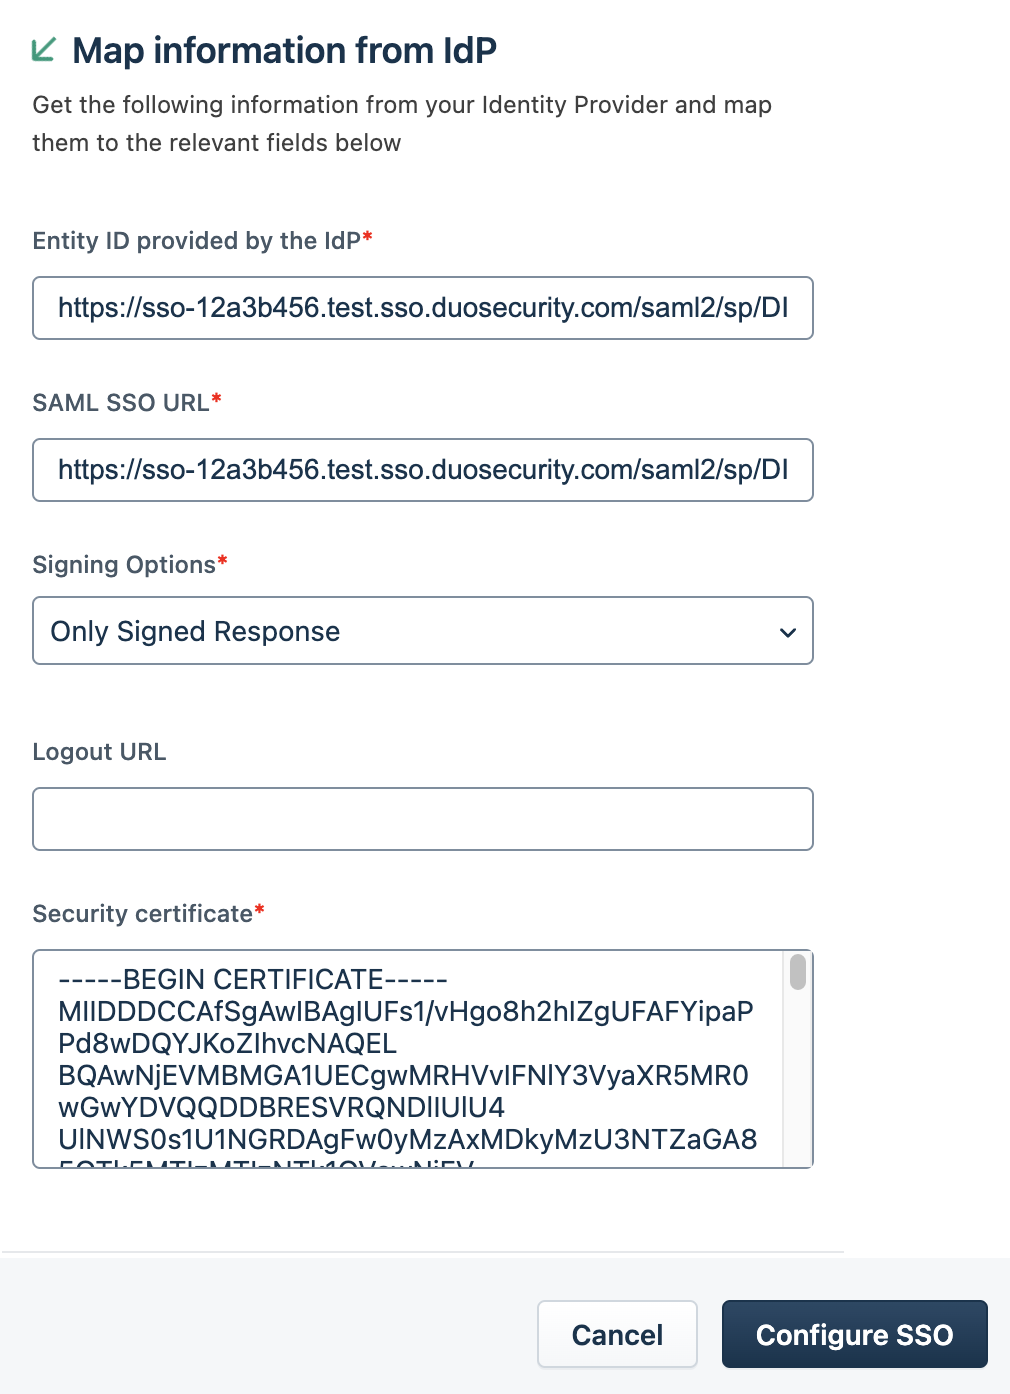 Freshdesk IdP Entity ID and SAML SSO URL